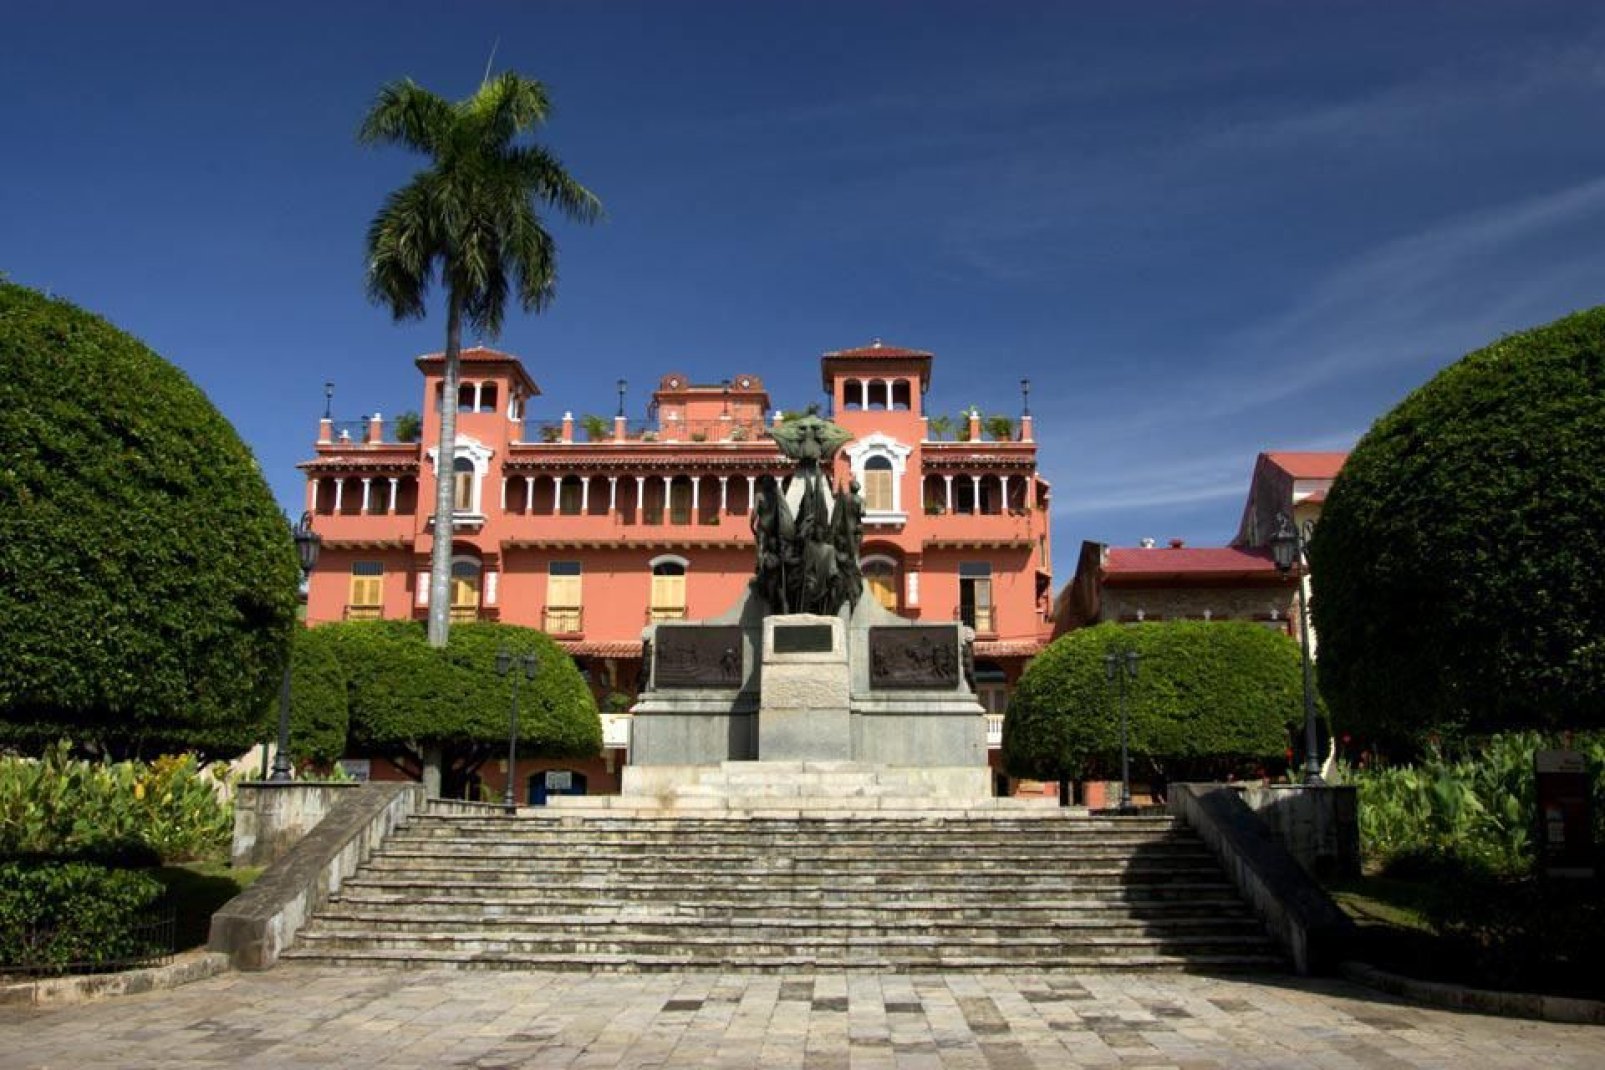 Im Zentrum des Platzes, in der Nähe des Casco Antiguo, thront die Statue von Simon Bolivar, der Held Lateinamerikas und Gründervater der Unabhängigkeit von der Spanischen Krone.